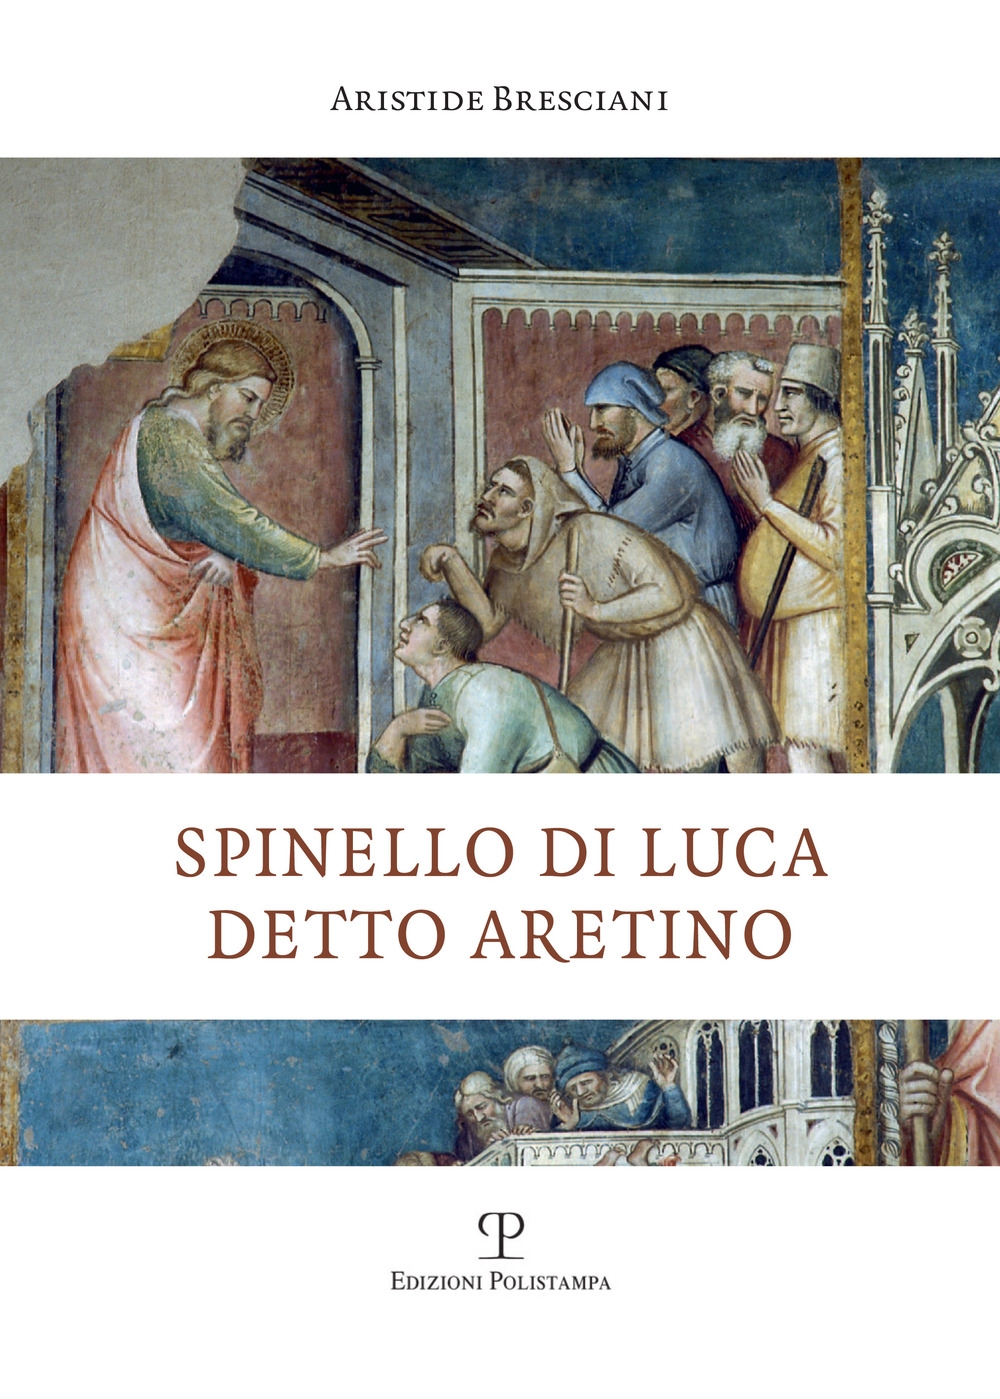 Libri Bresciani Aristide - Spinello Di Luca Detto Aretino NUOVO SIGILLATO, EDIZIONE DEL 05/01/2021 SUBITO DISPONIBILE